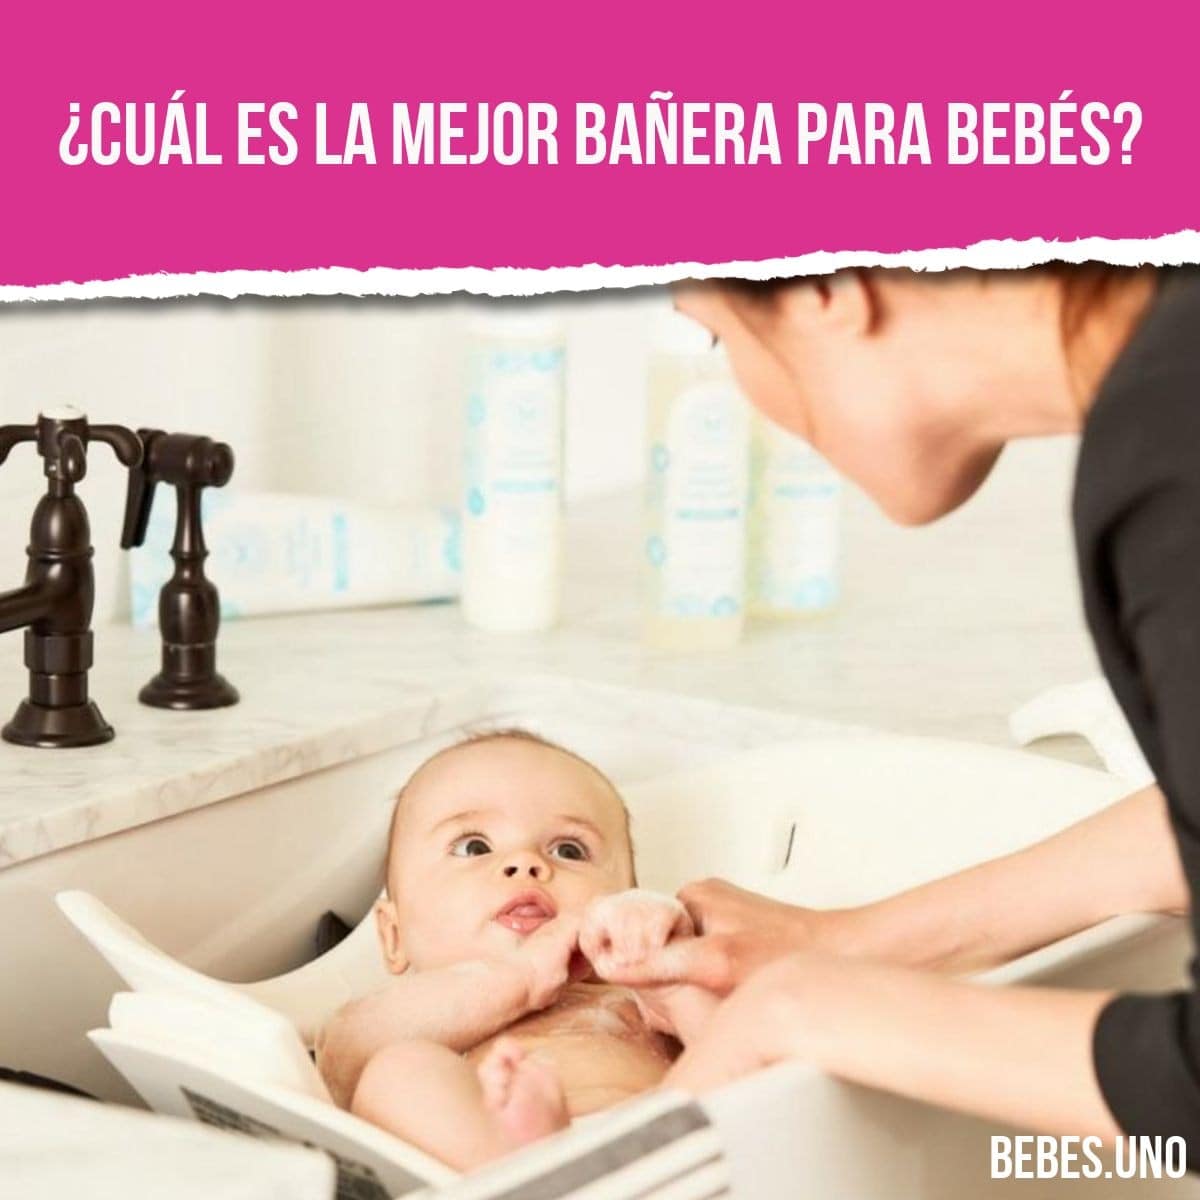 ¿Cuál es la mejor bañera para bebés?